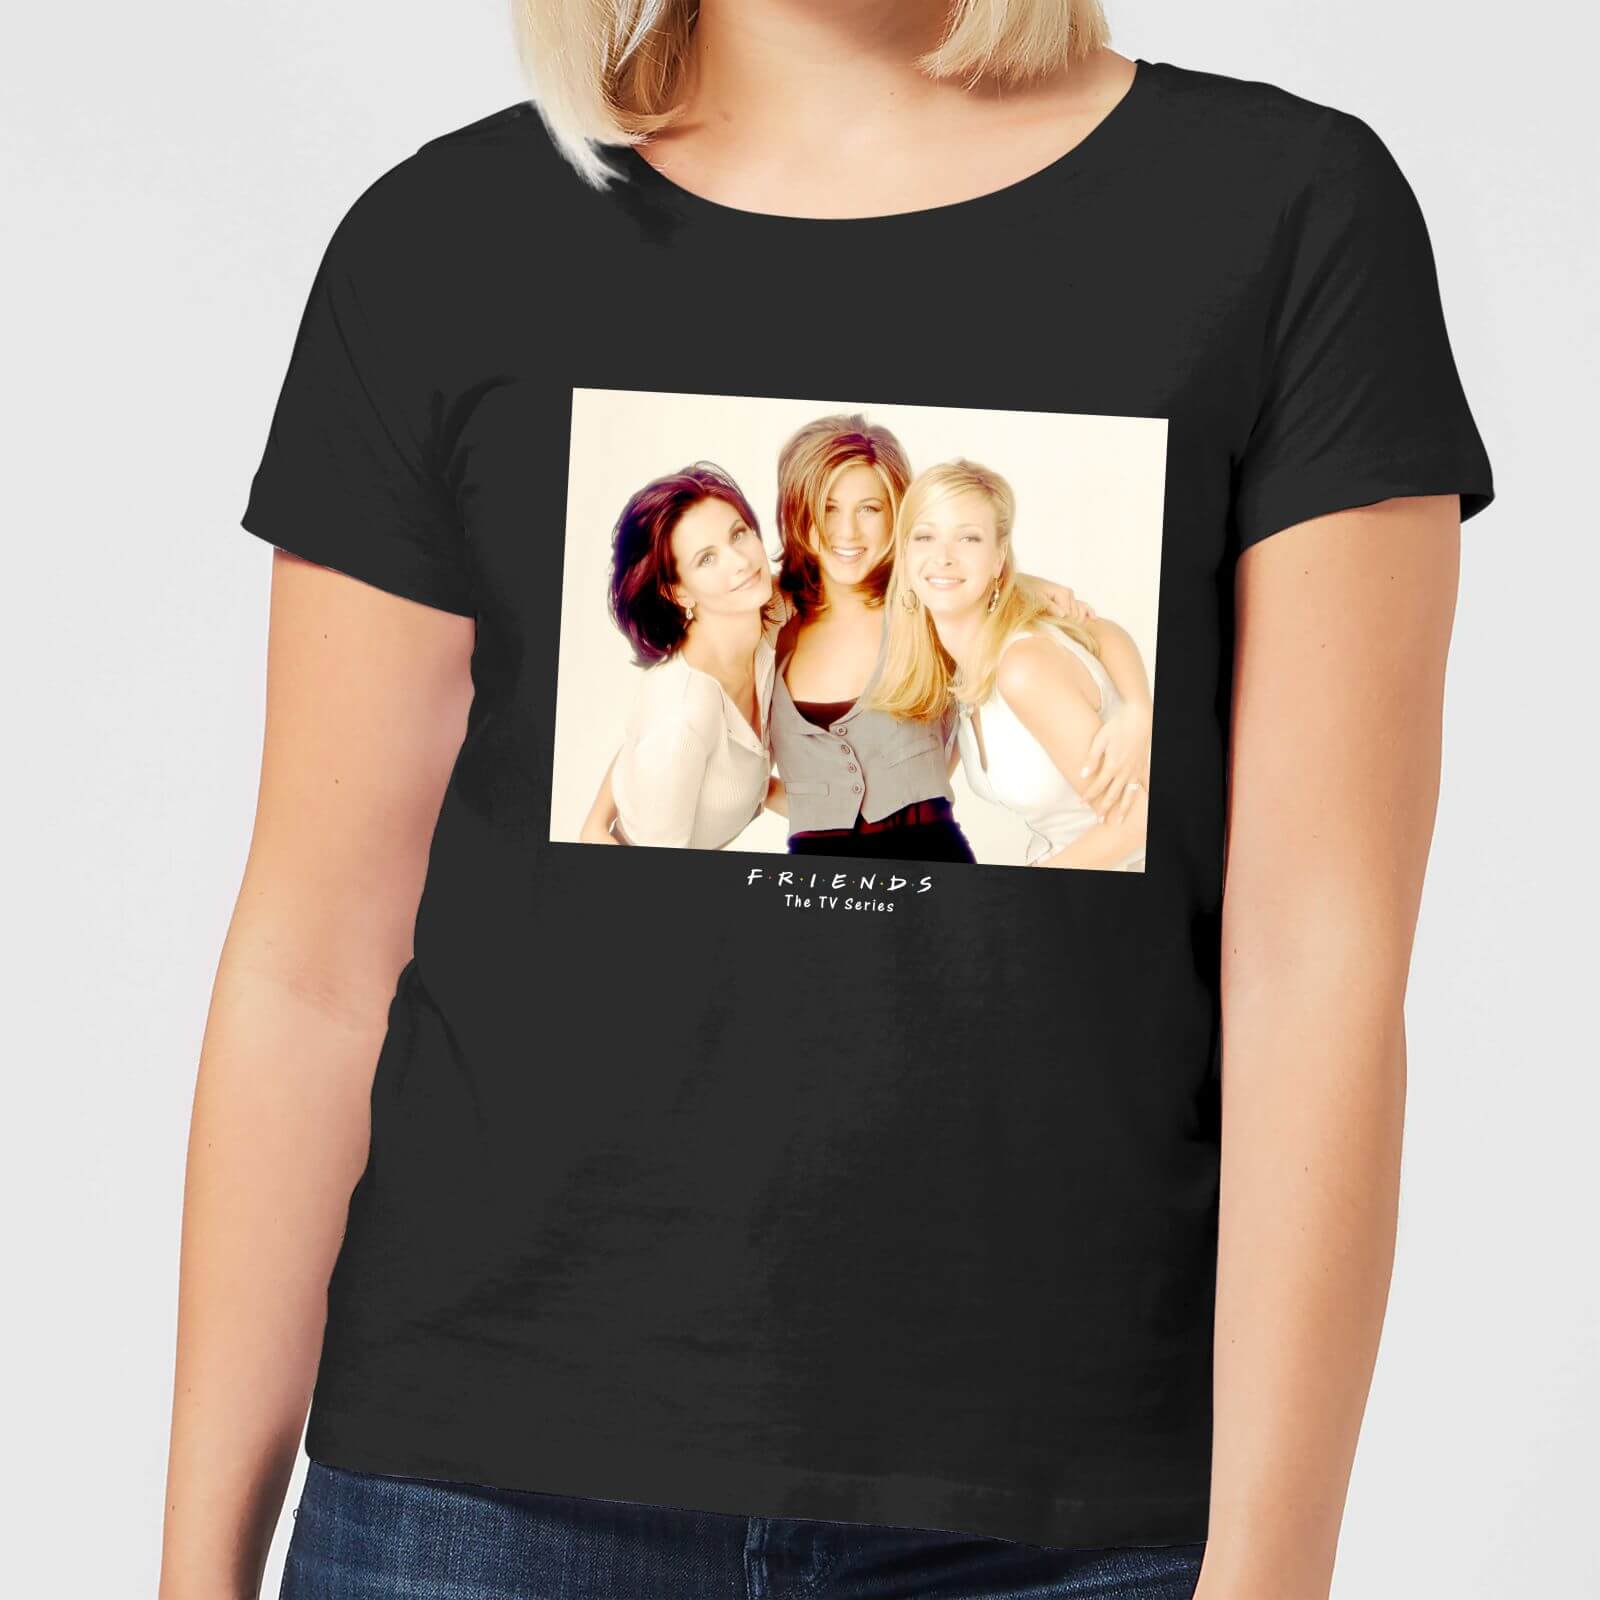 Friends Girls Women's T-Shirt - Black - 4XL - Black